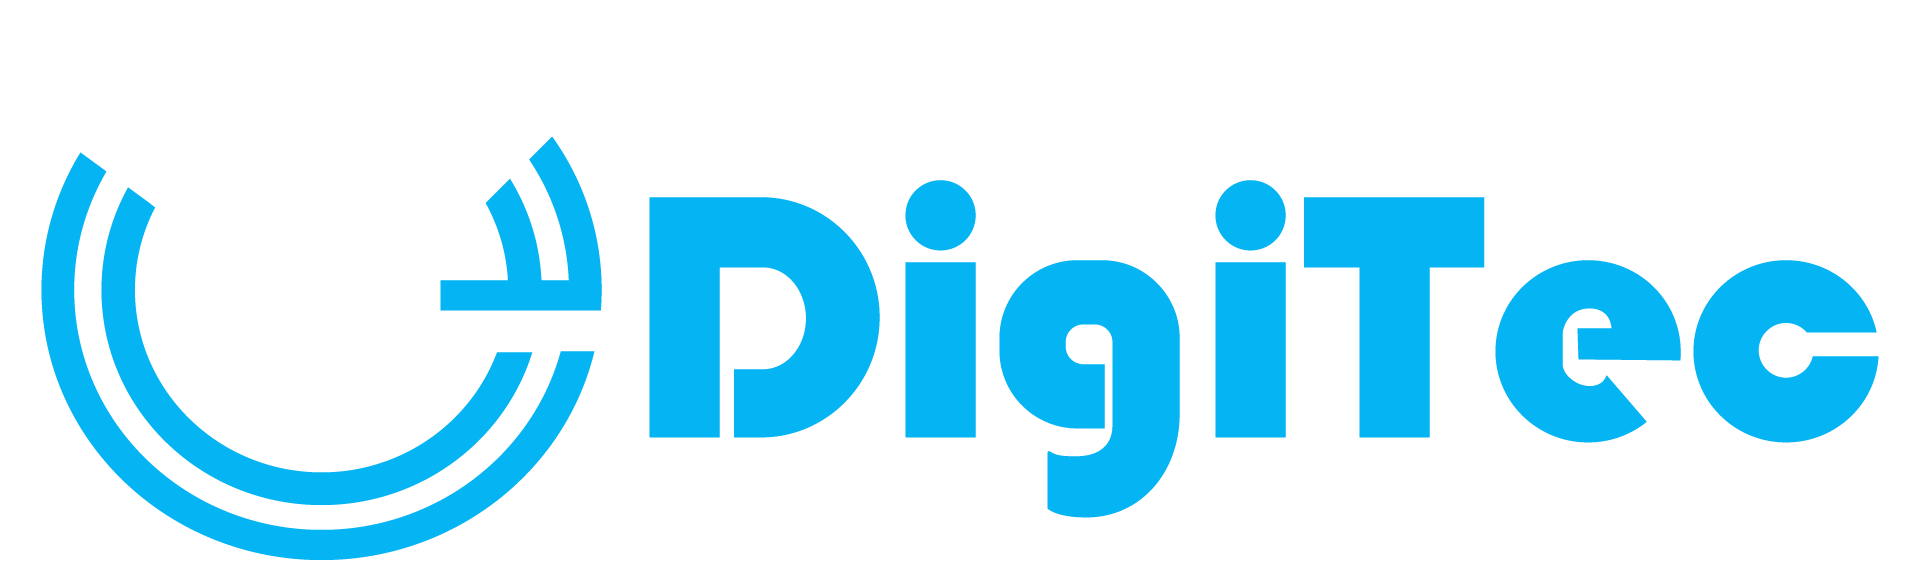 33digitec logo 2